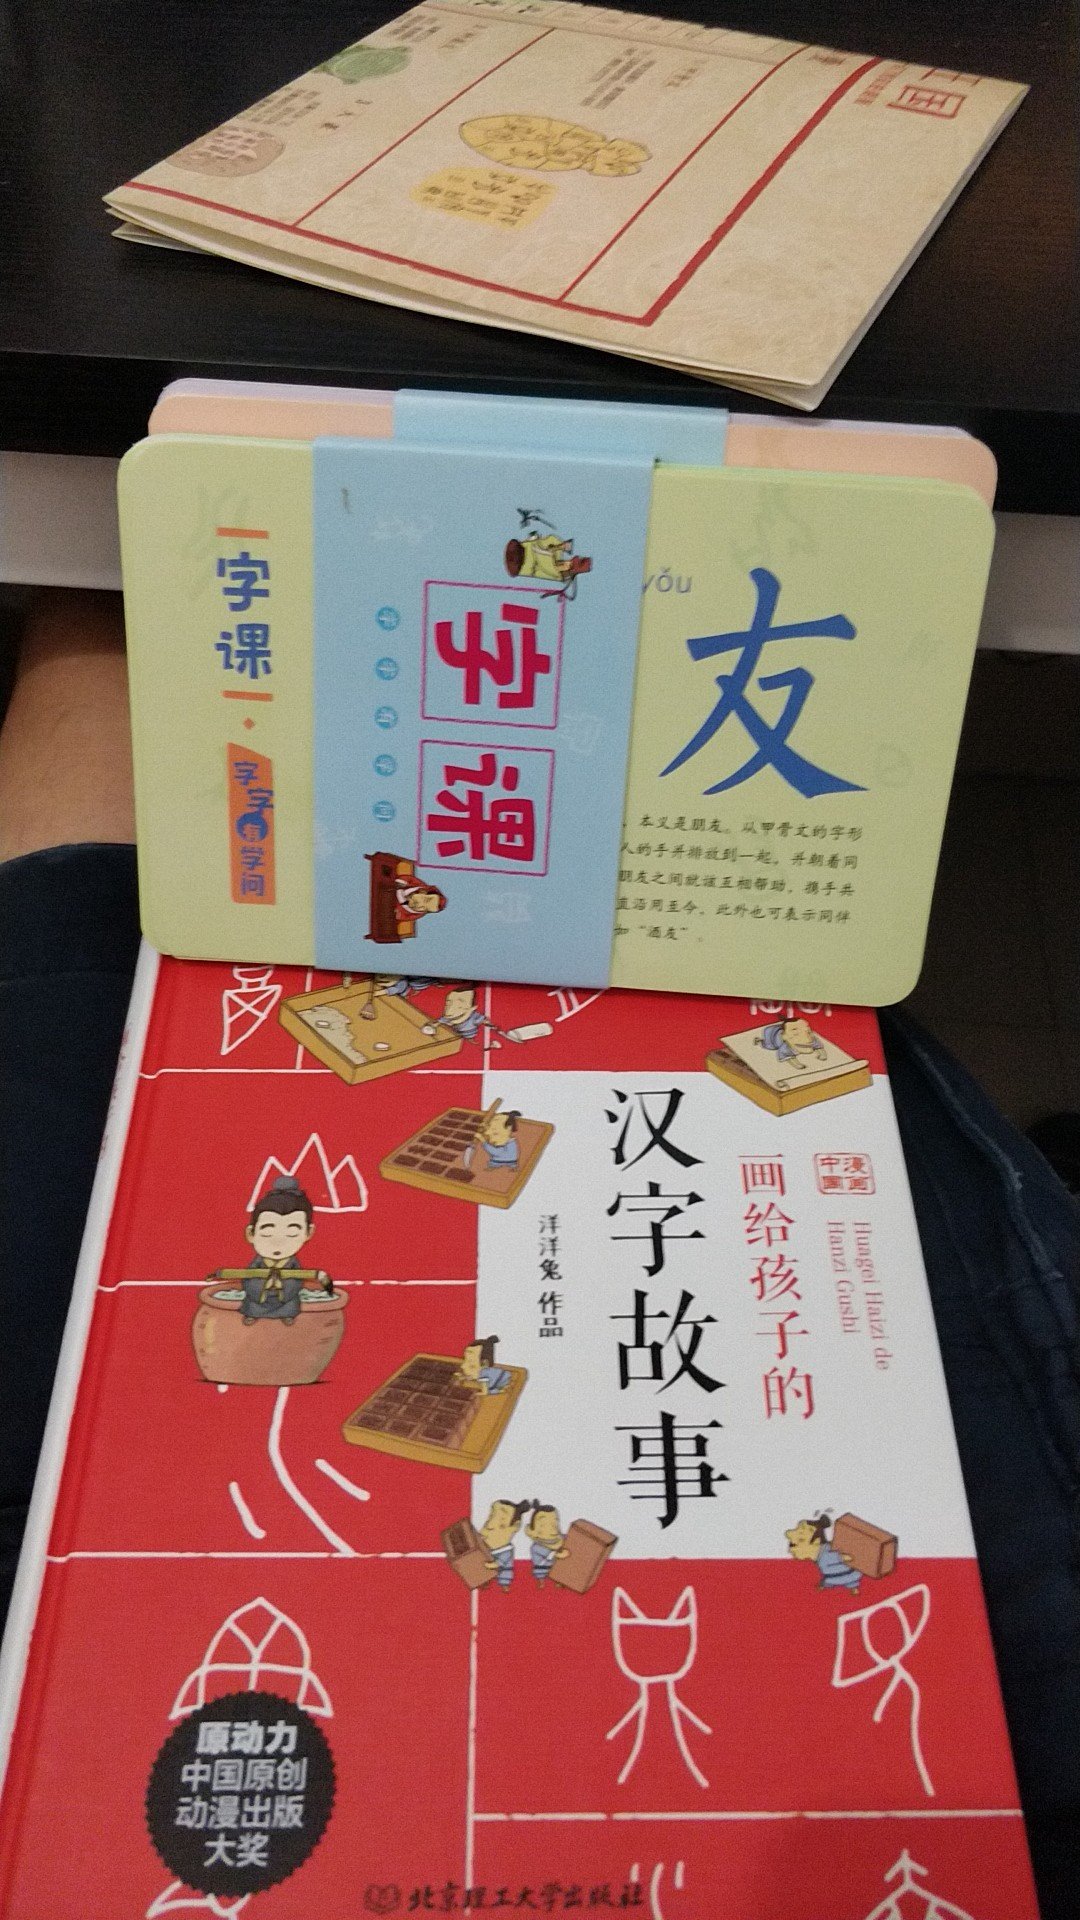 书纸质挺好，内容还是挺丰富，用漫画的形式来演绎汉字故事，不错！